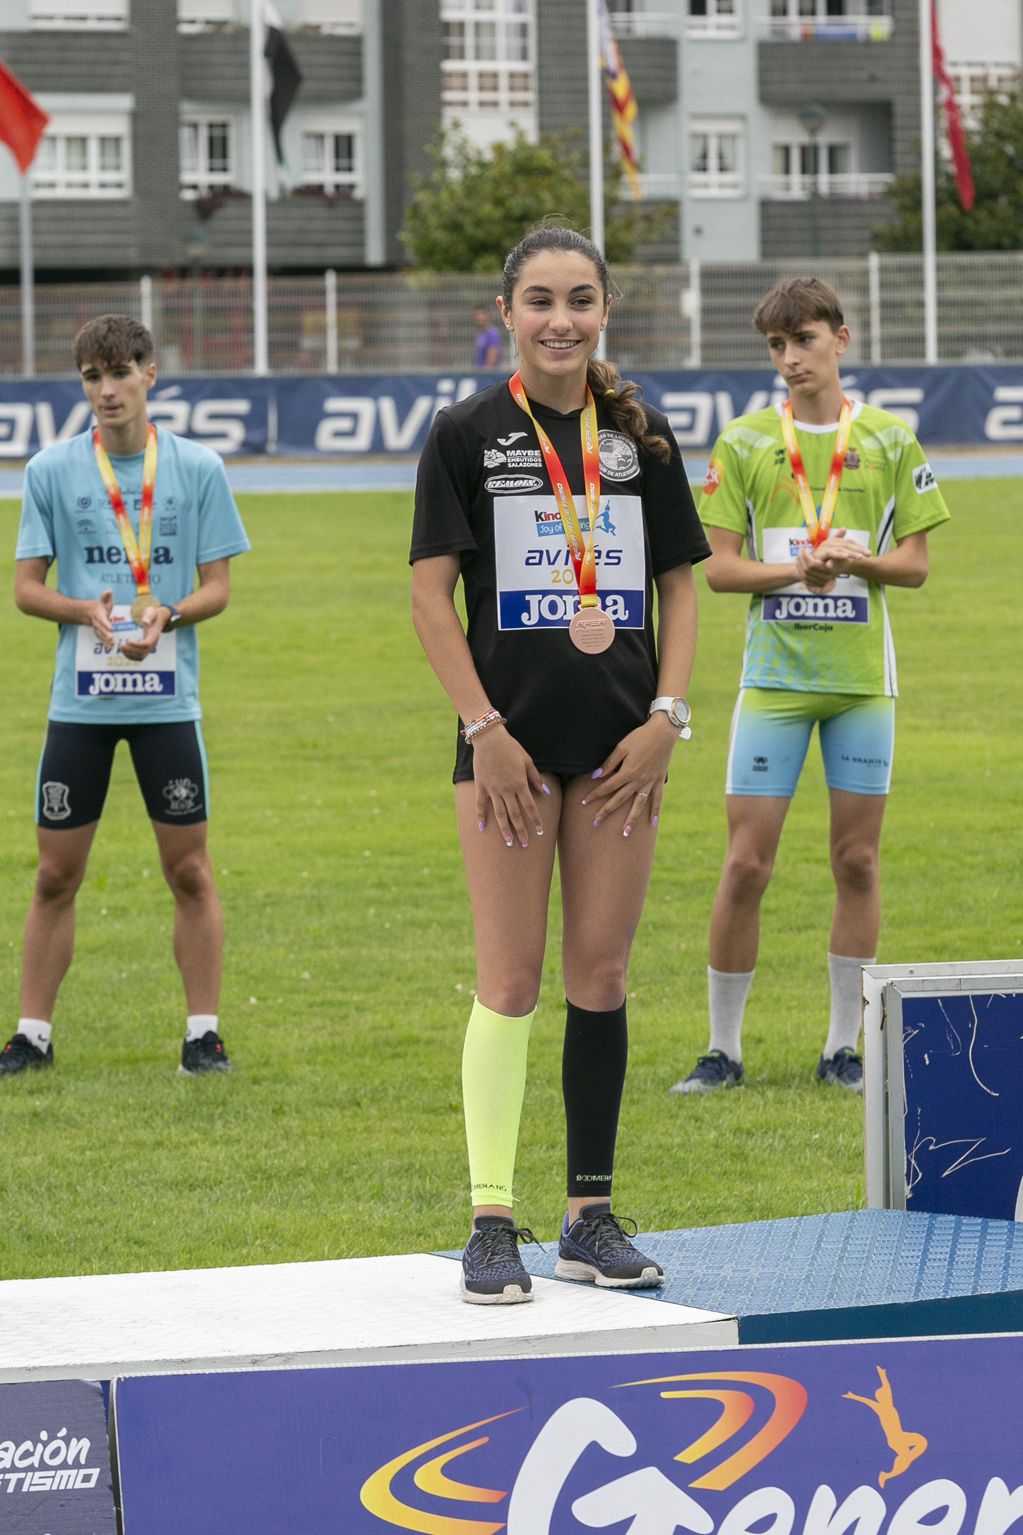 Vibrante día de atletismo en Avilés con el campeonato de España sub-16 y el homenaje a Yago Lamela